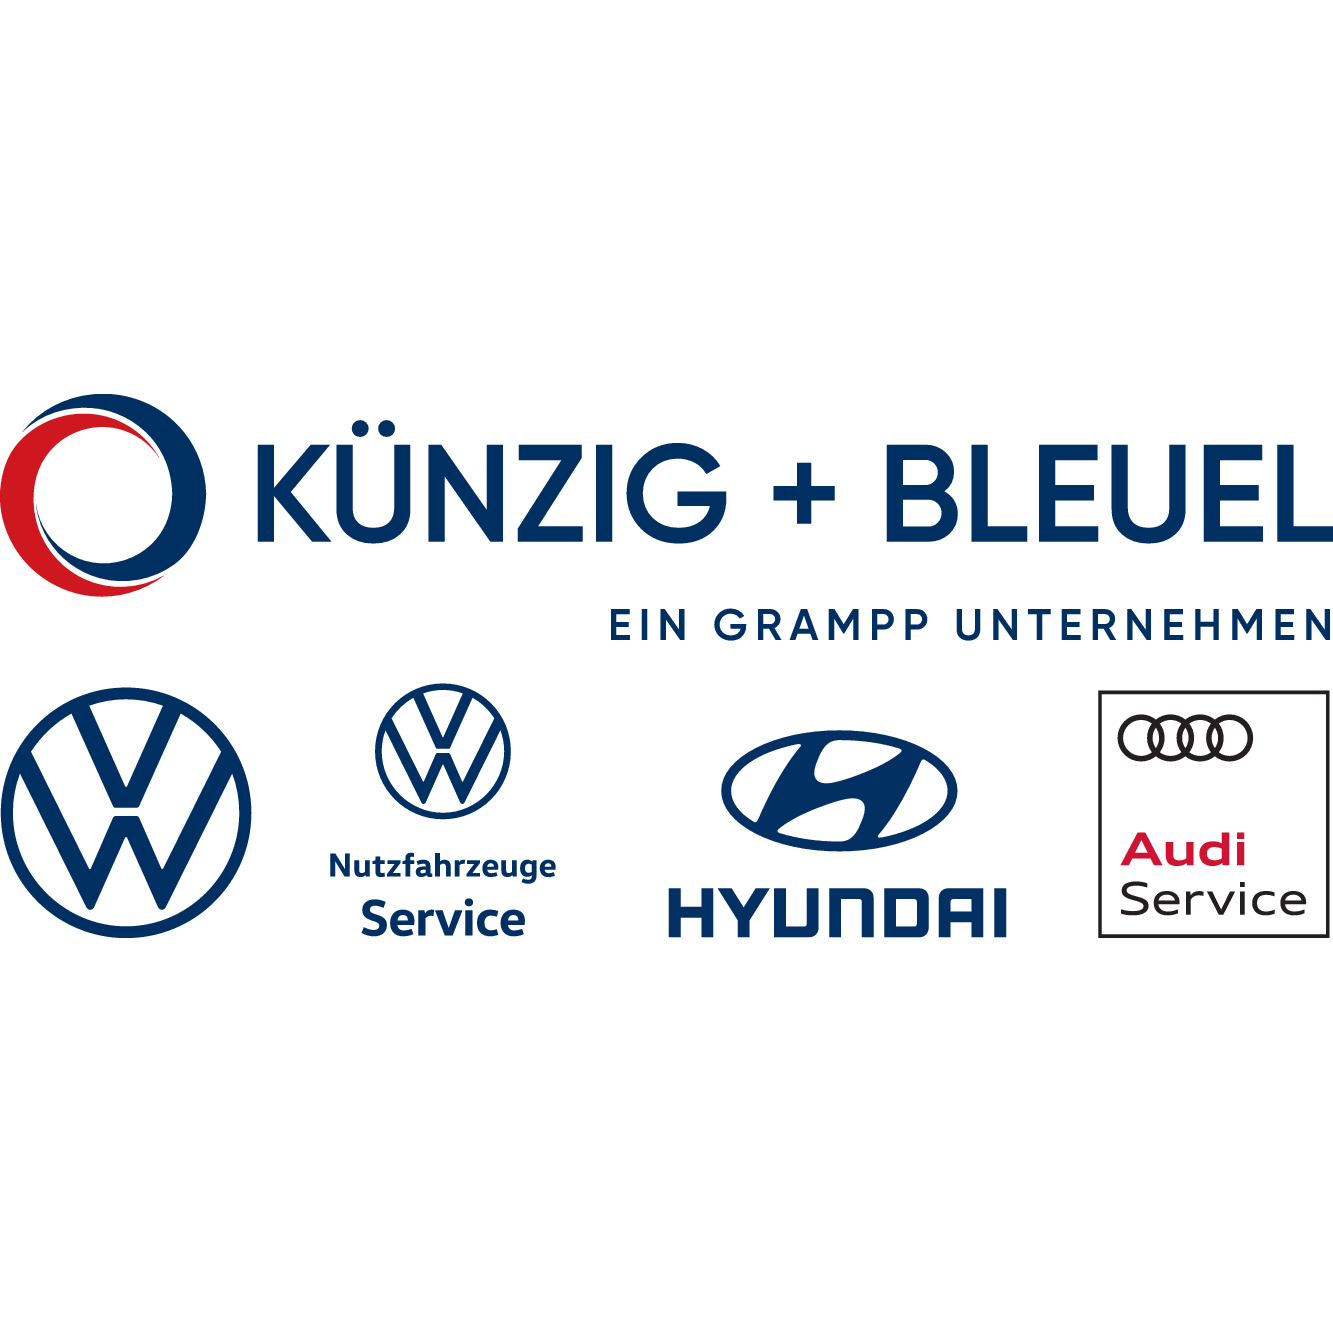 Künzig + Bleuel GmbH in Aschaffenburg - Logo